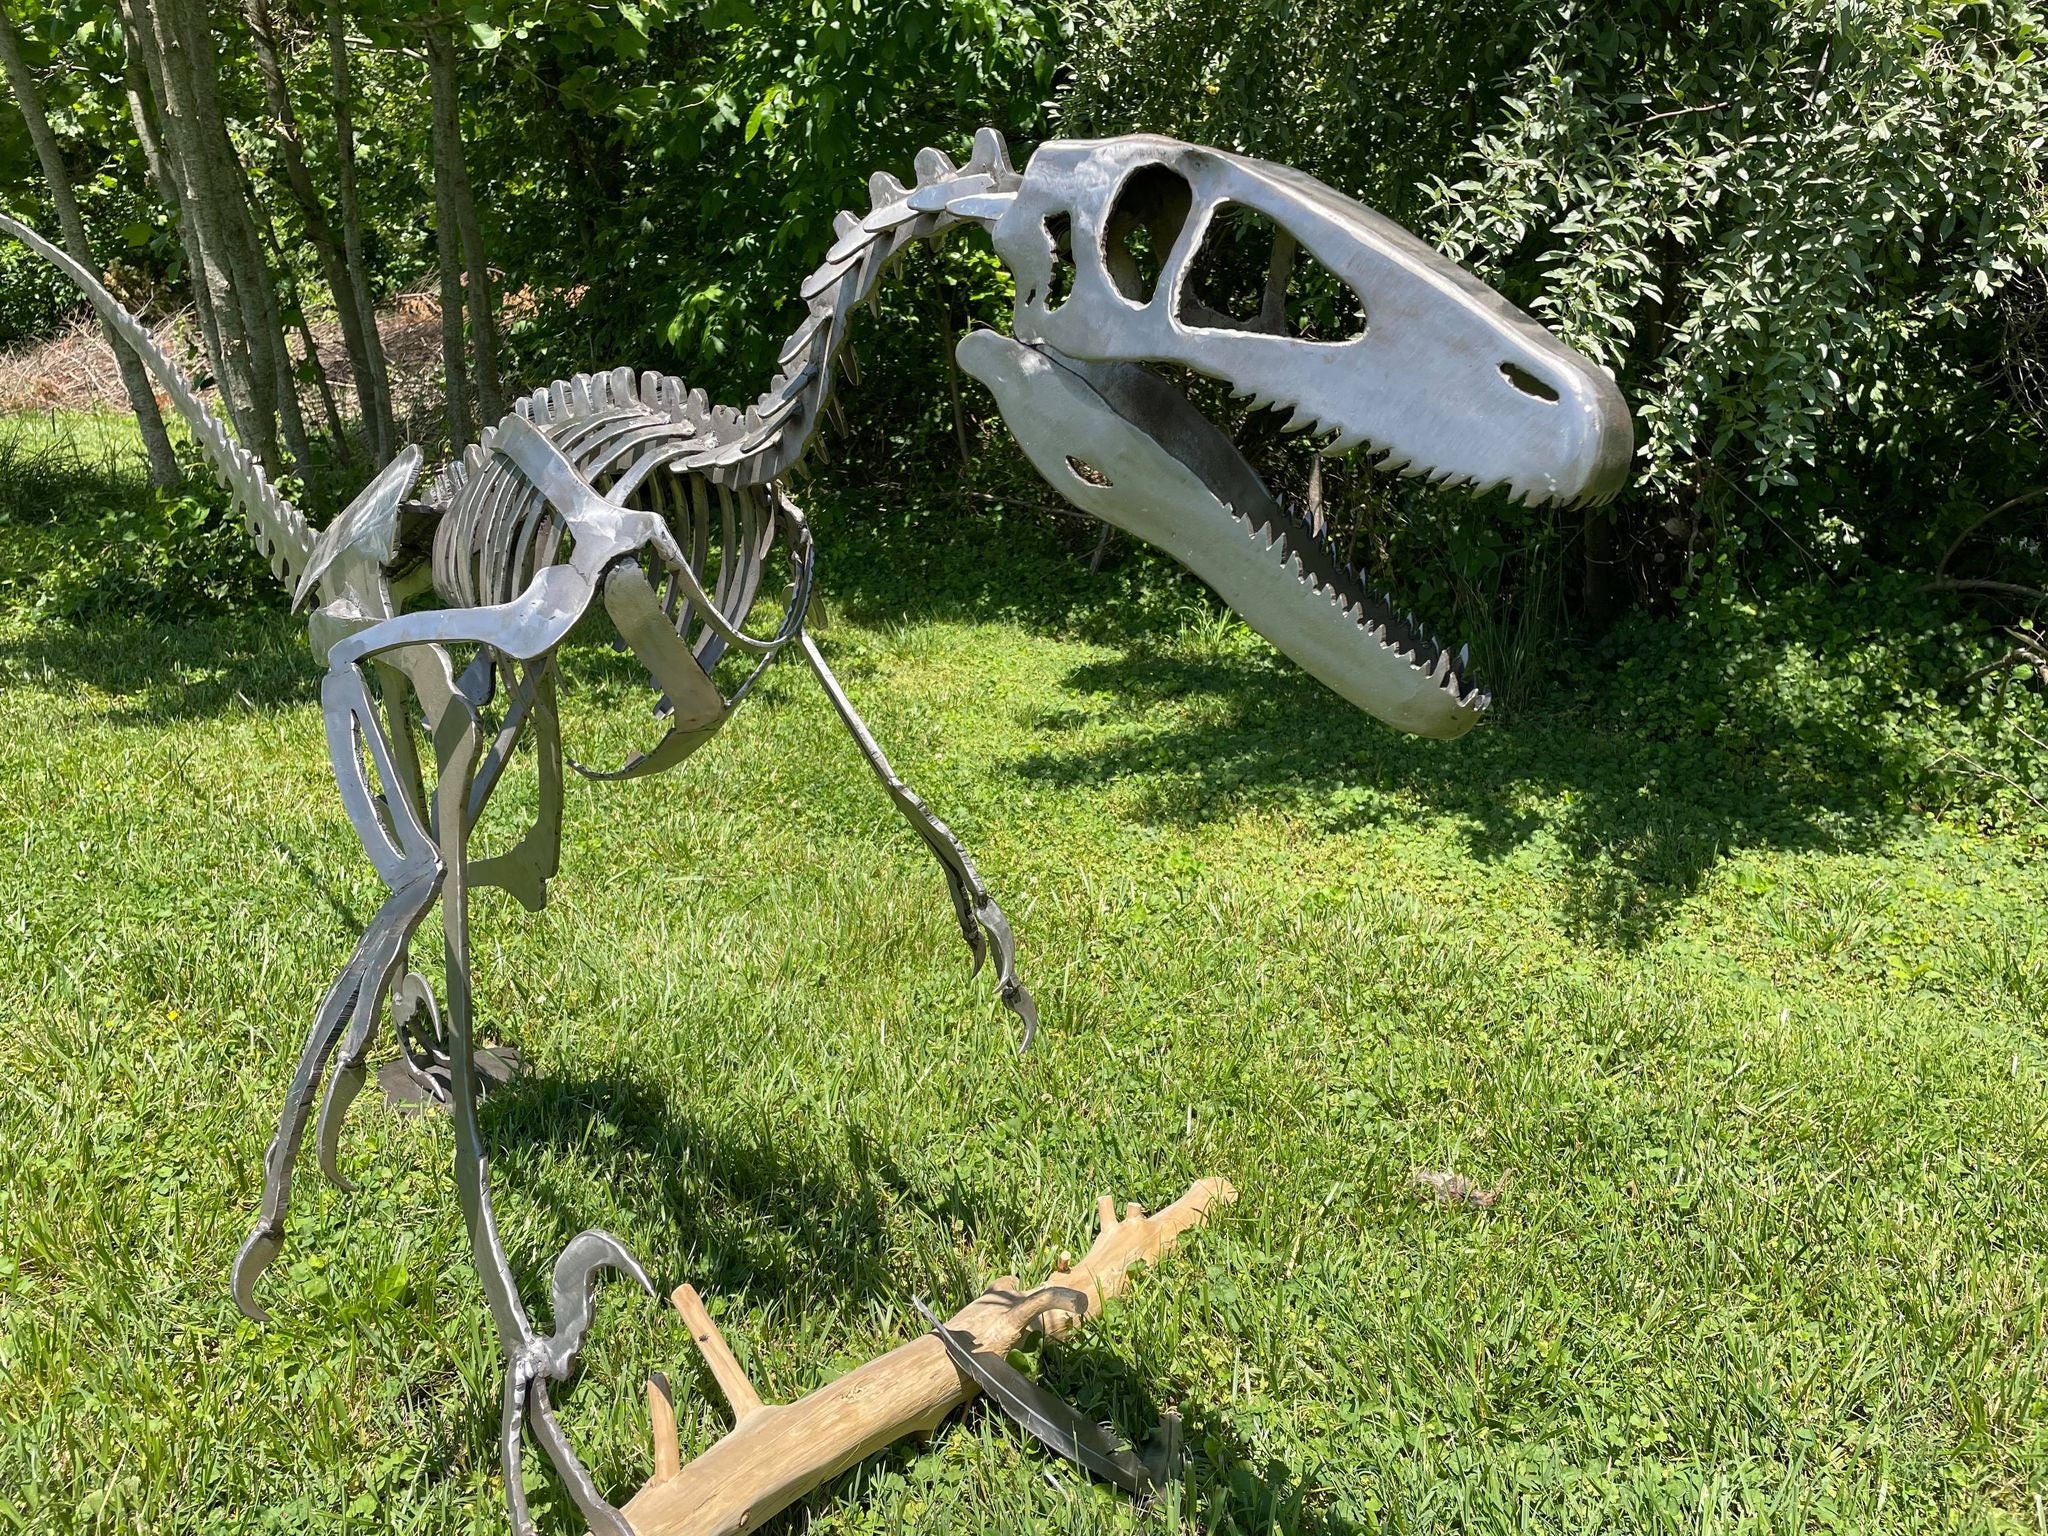 Replica Deinonychus Skull — Skulls Unlimited International, Inc.